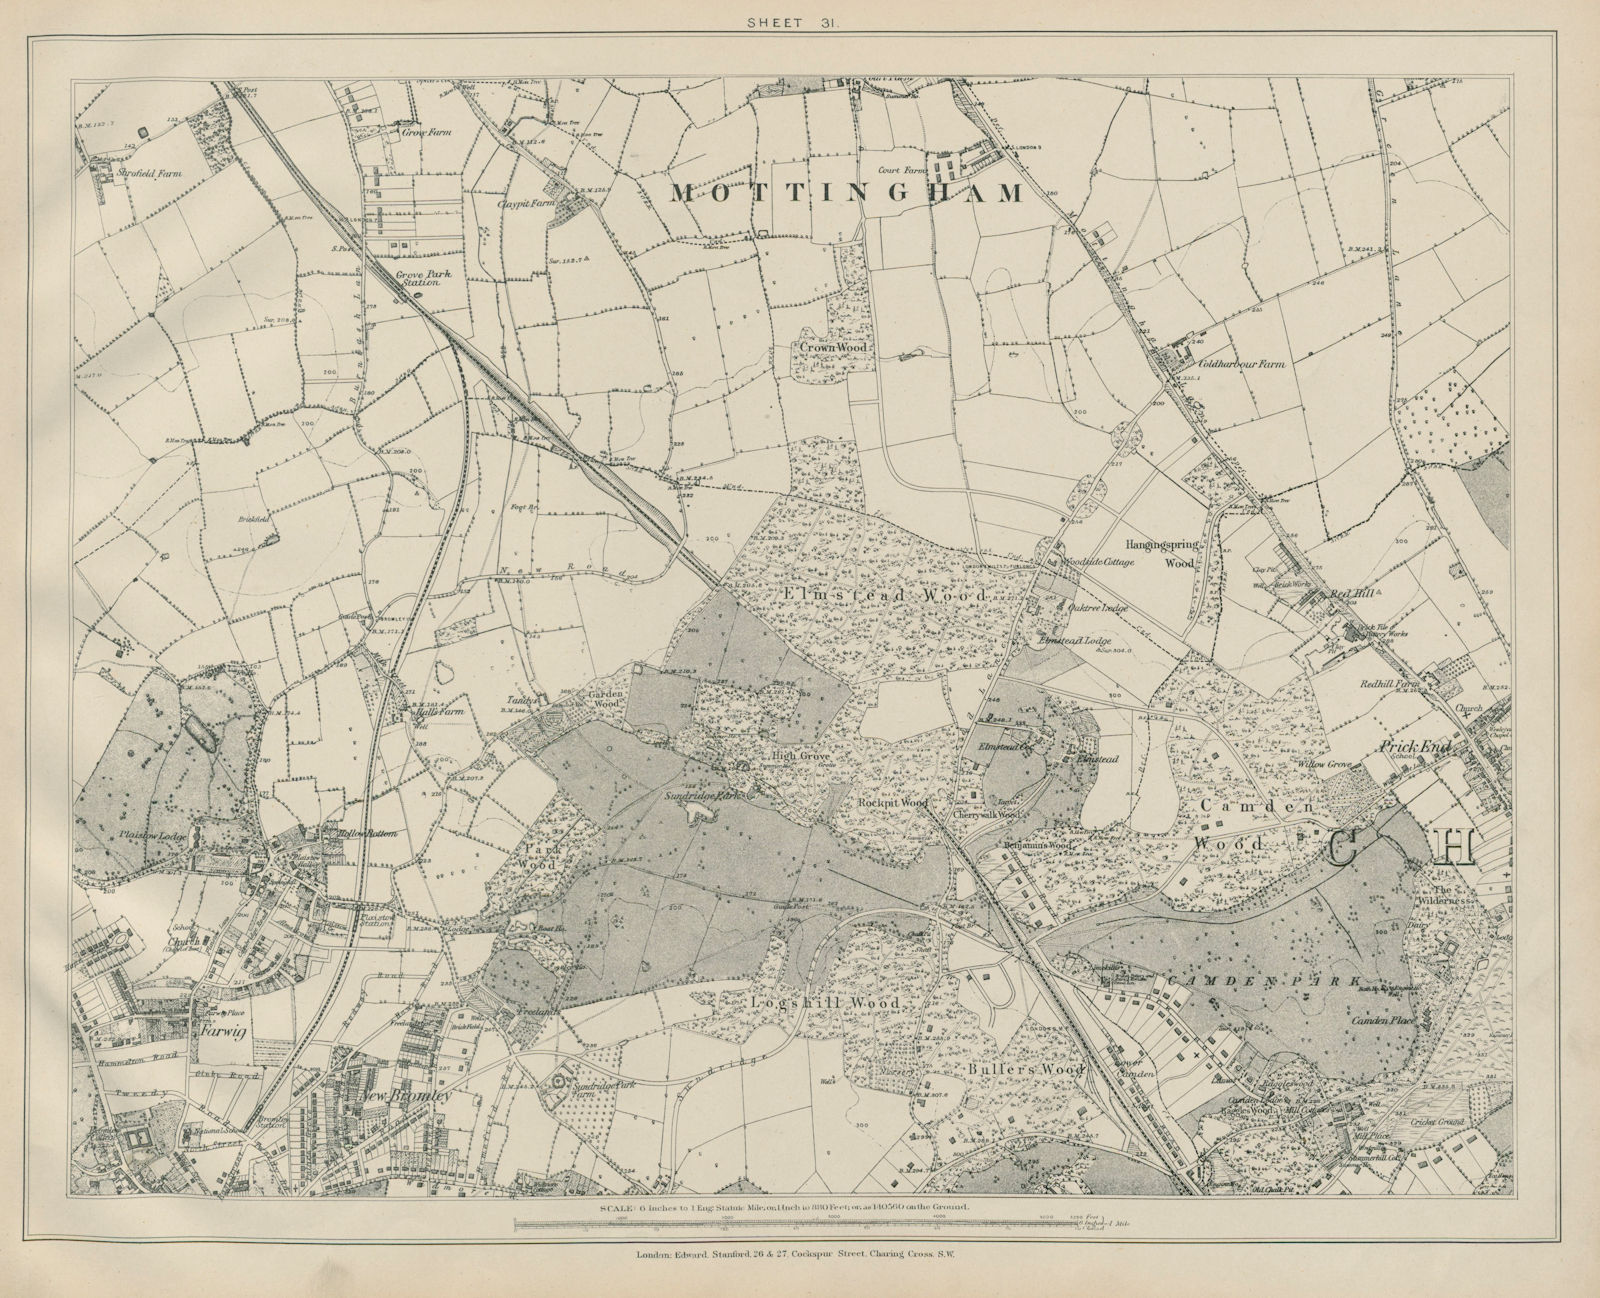 Associate Product Stanford Library map of London Sheet 31 Mottingham Chislehurst Bromley 1895